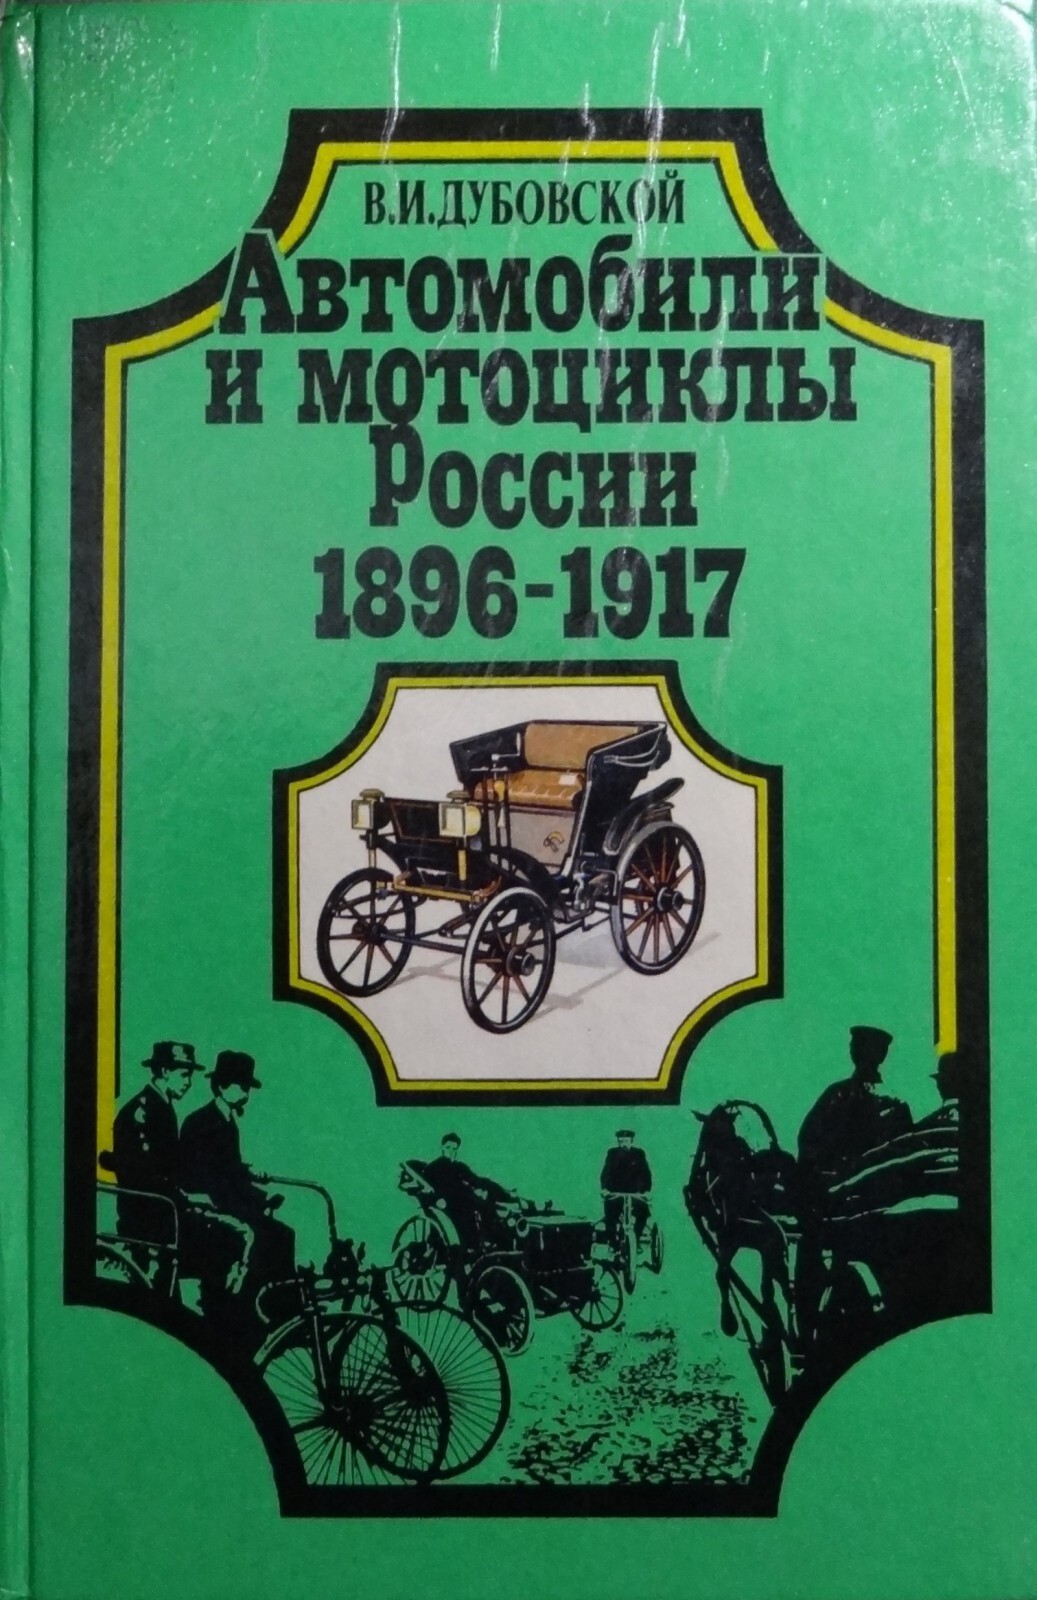 В.И Дубовской автомобили и мотоциклы России 1896-1917